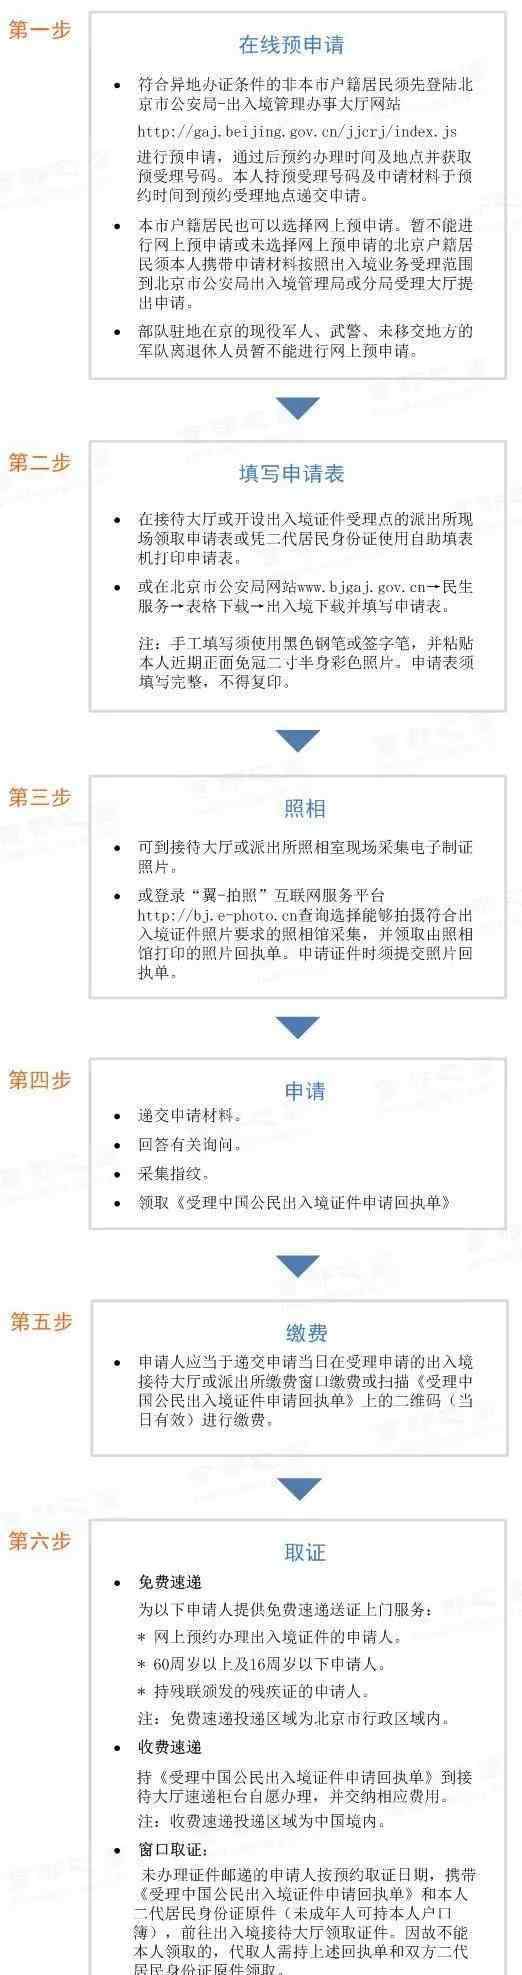 右安门派出所 2019北京护照港澳通行证办理流程+费用+地点+时长